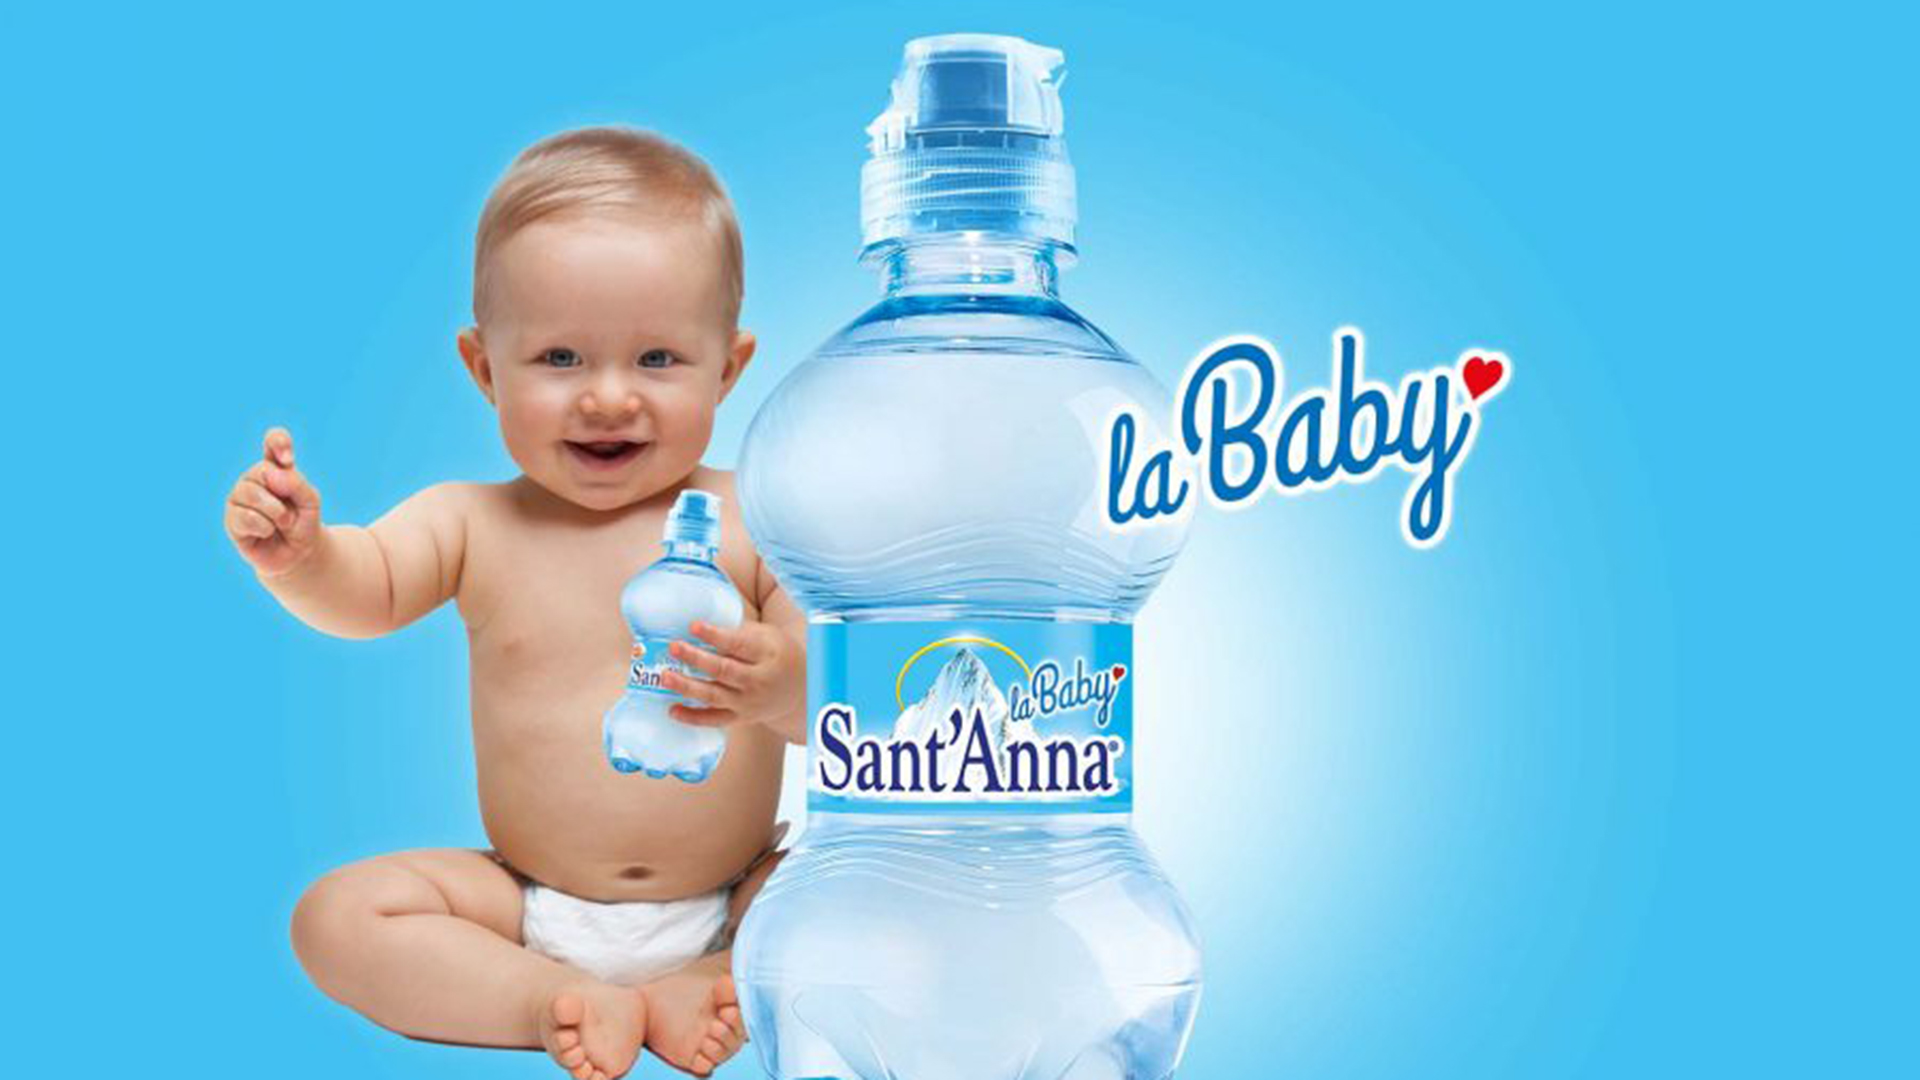 La Baby: da Acqua Sant'Anna per tutti i bambini  Horeca Channel Italia -  Consumer Experience Out of Home